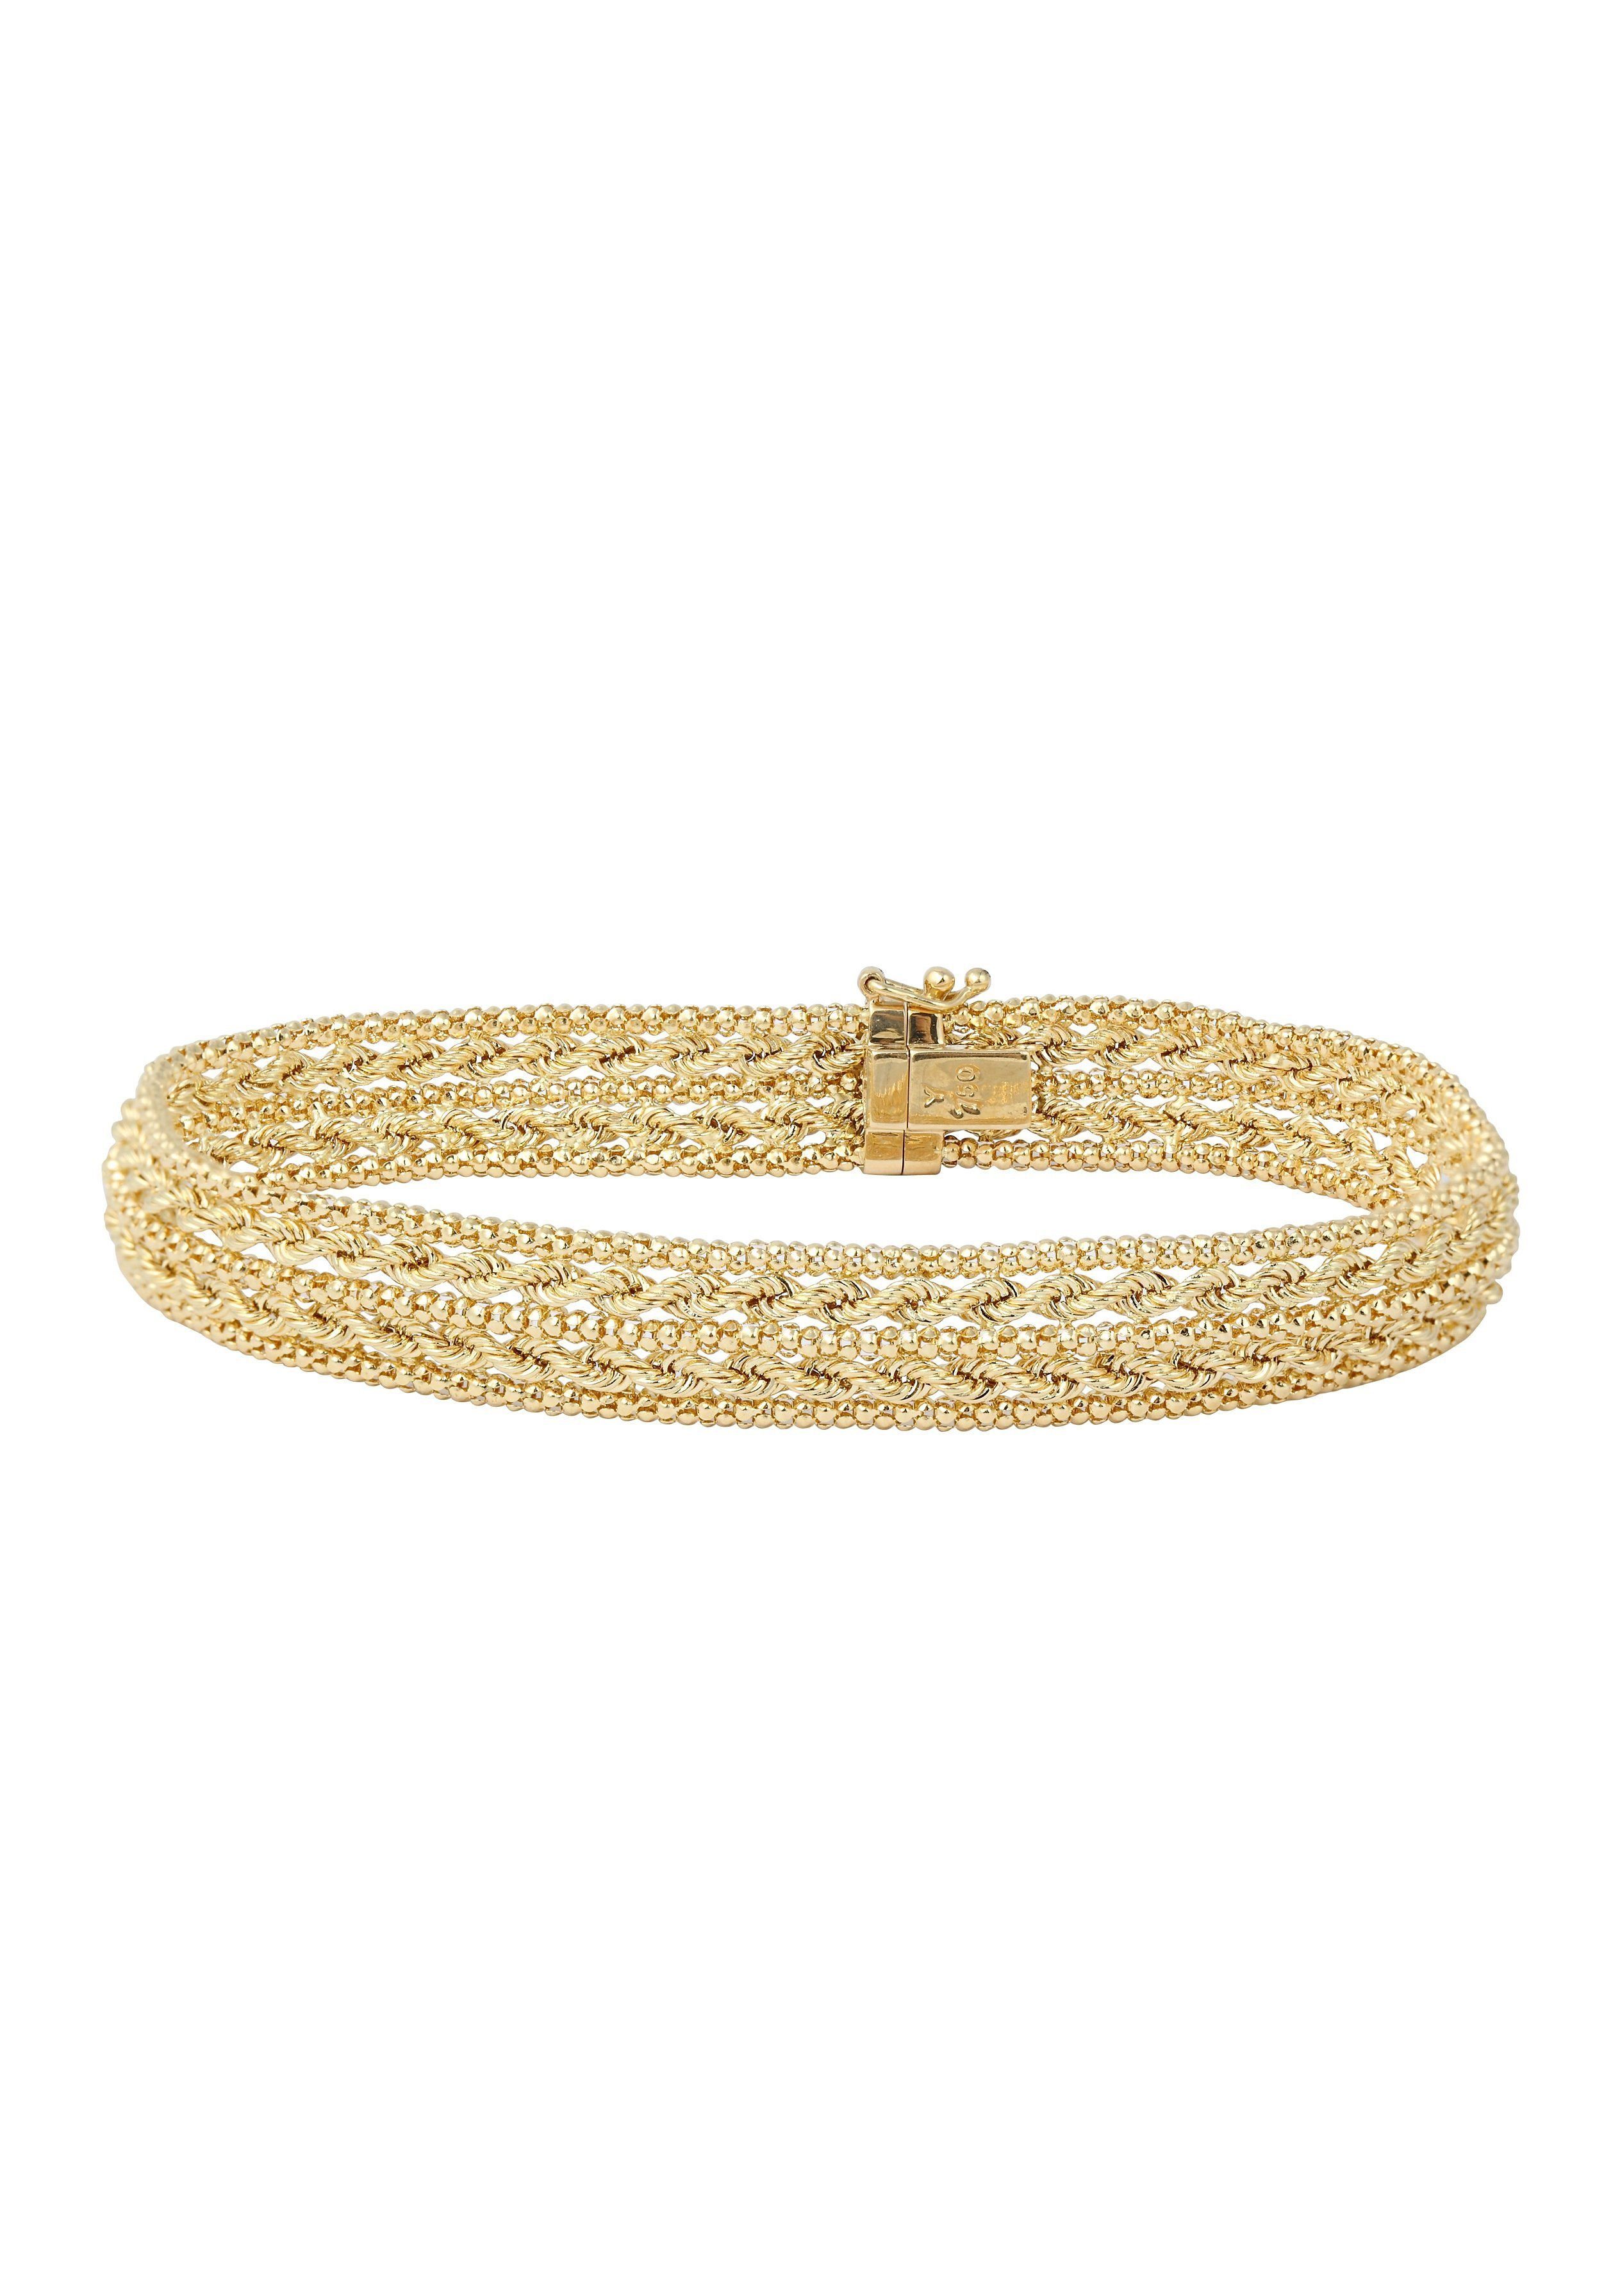 Goldene Armbänder für Damen kaufen » Gold Armbänder | OTTO